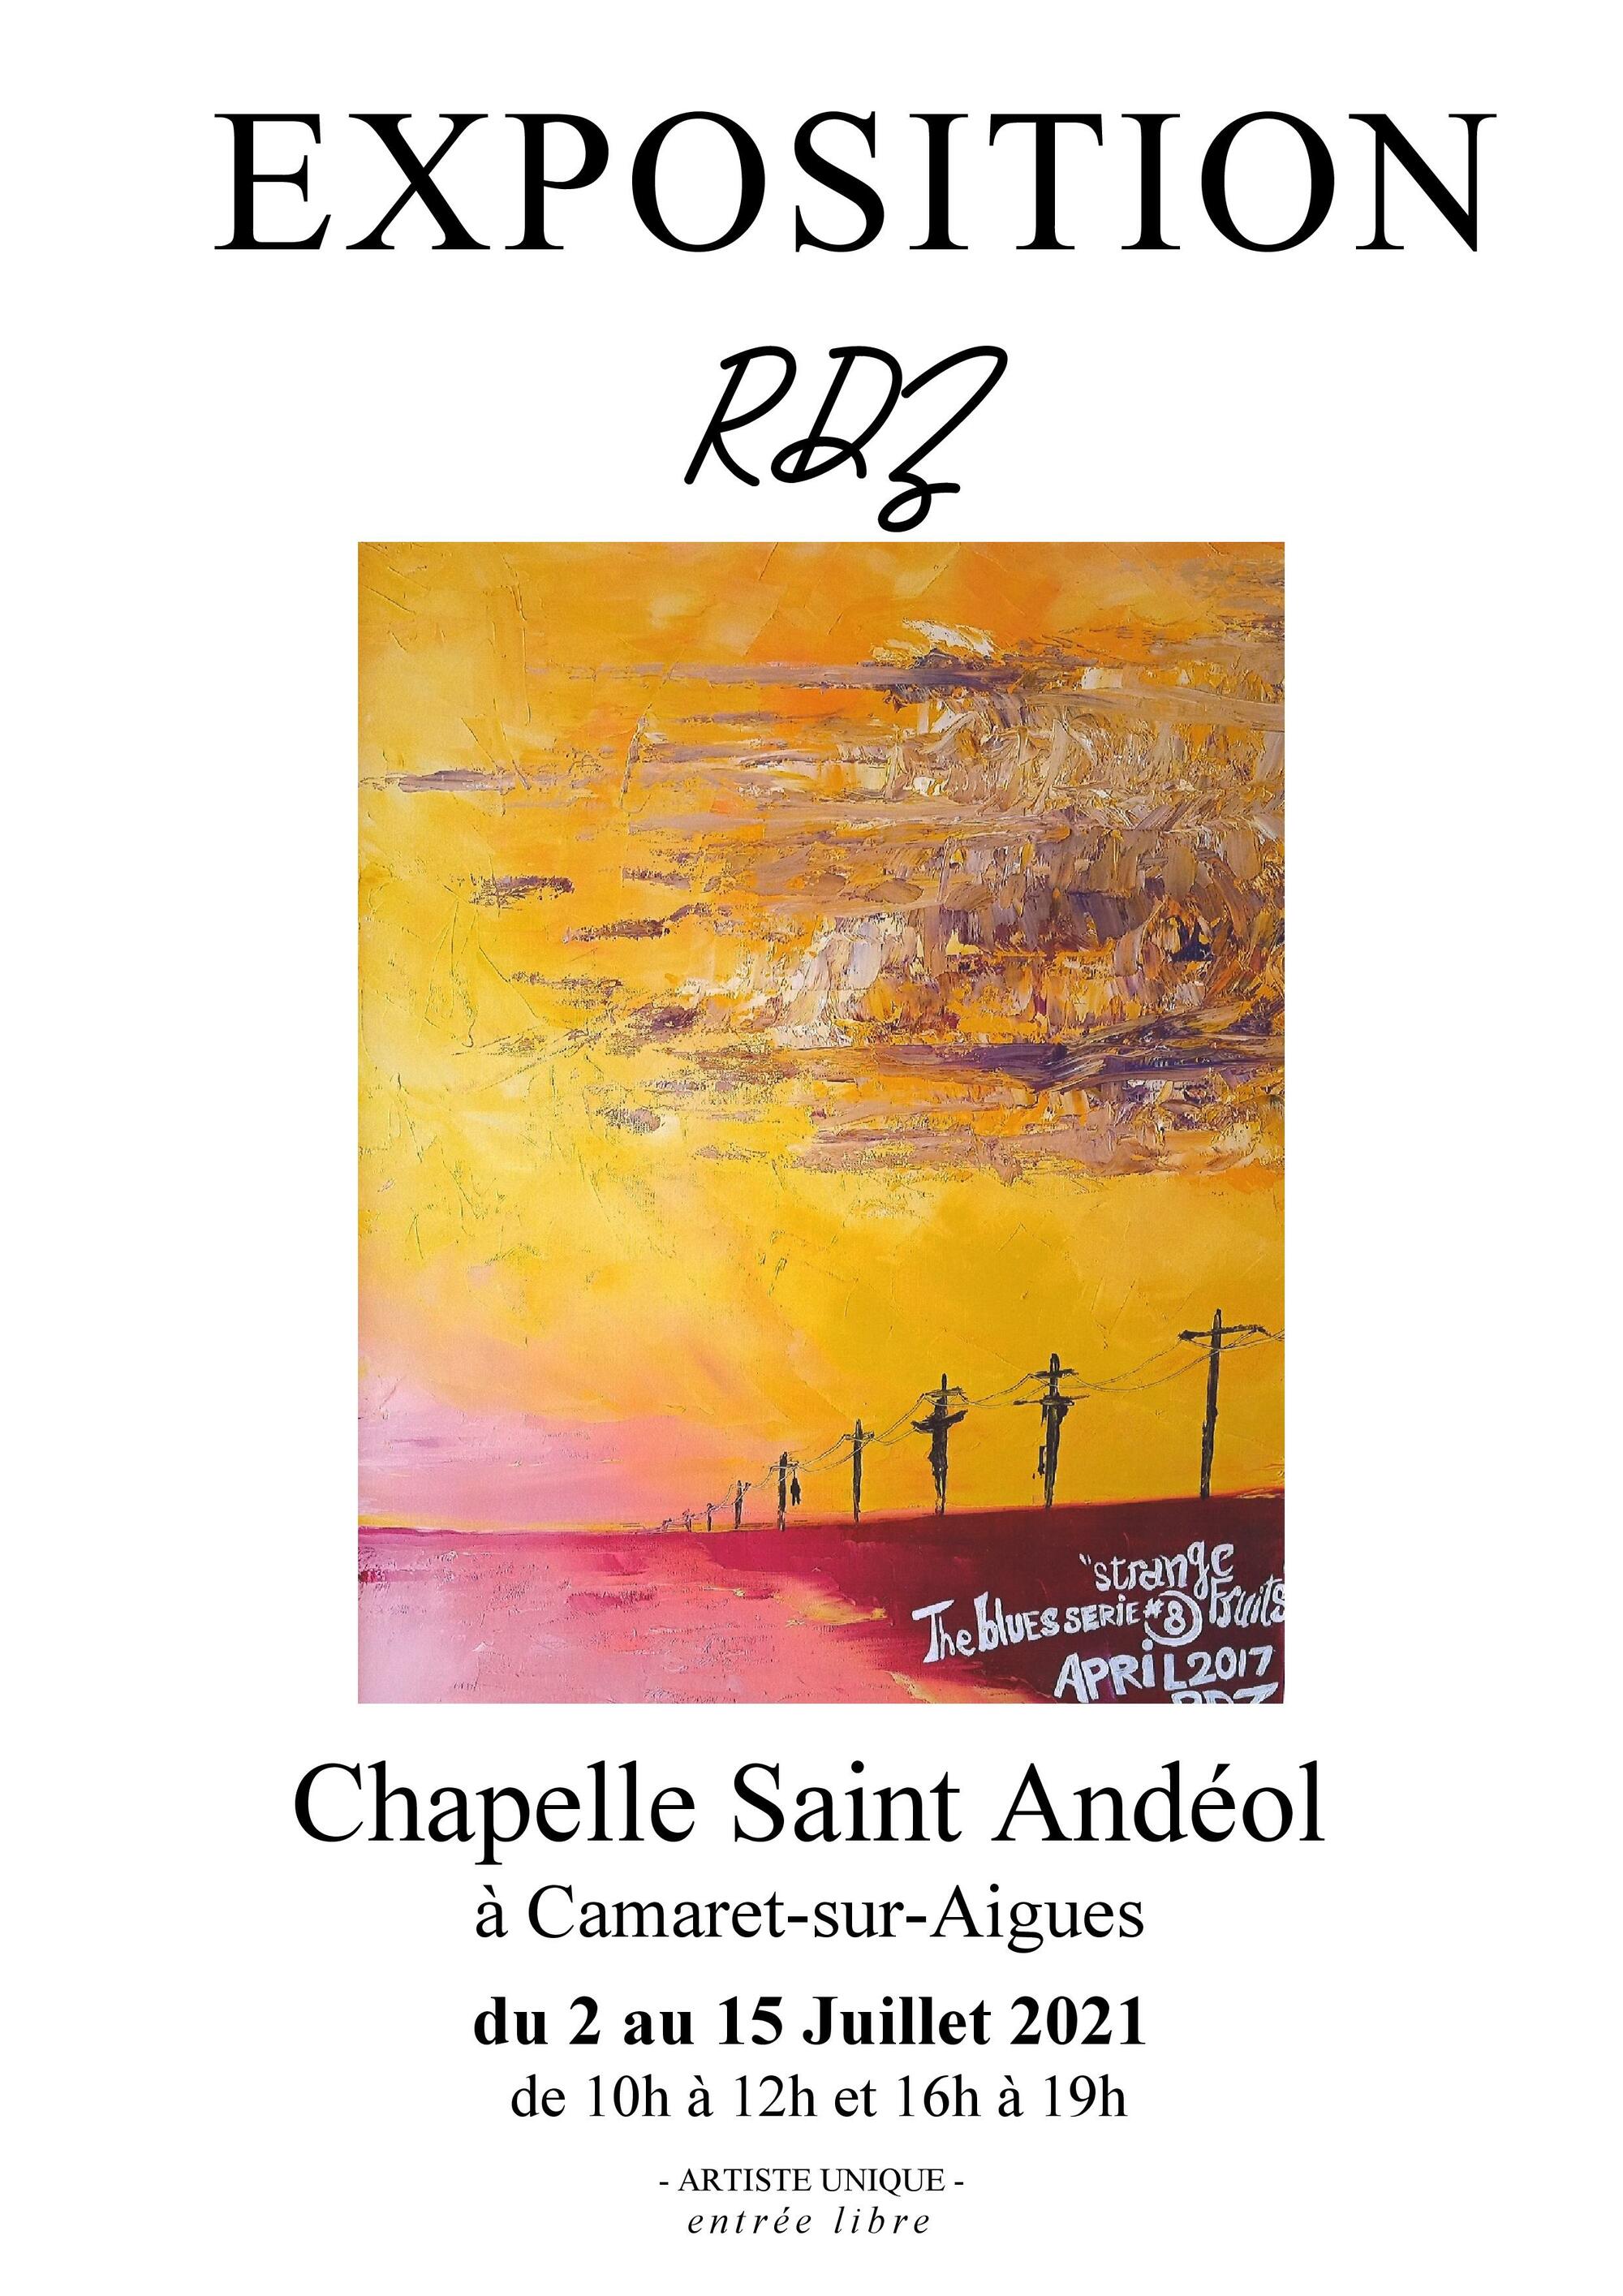 Nouvelle exposition de peinture à Camaret à la Chapelle Saint Andéol par l'artiste camarétois « RDZ »